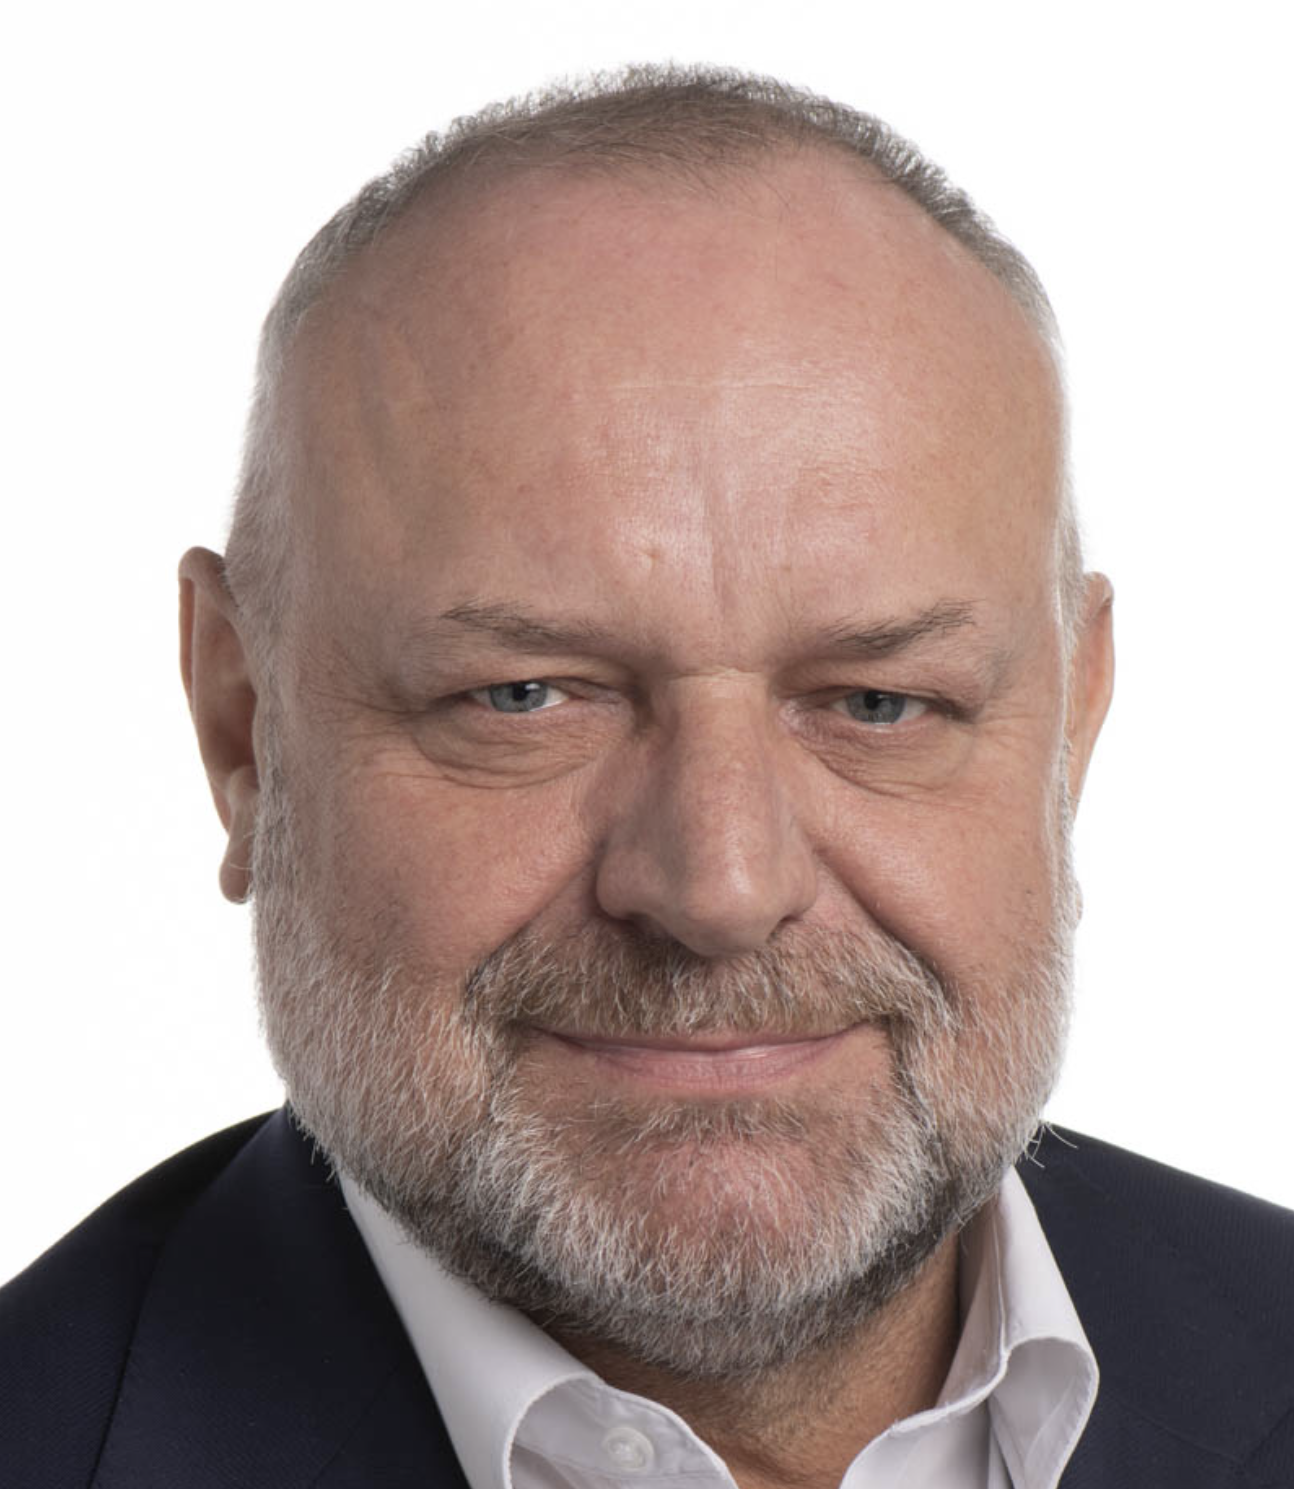  Jarosław Duda  Poland, EPP